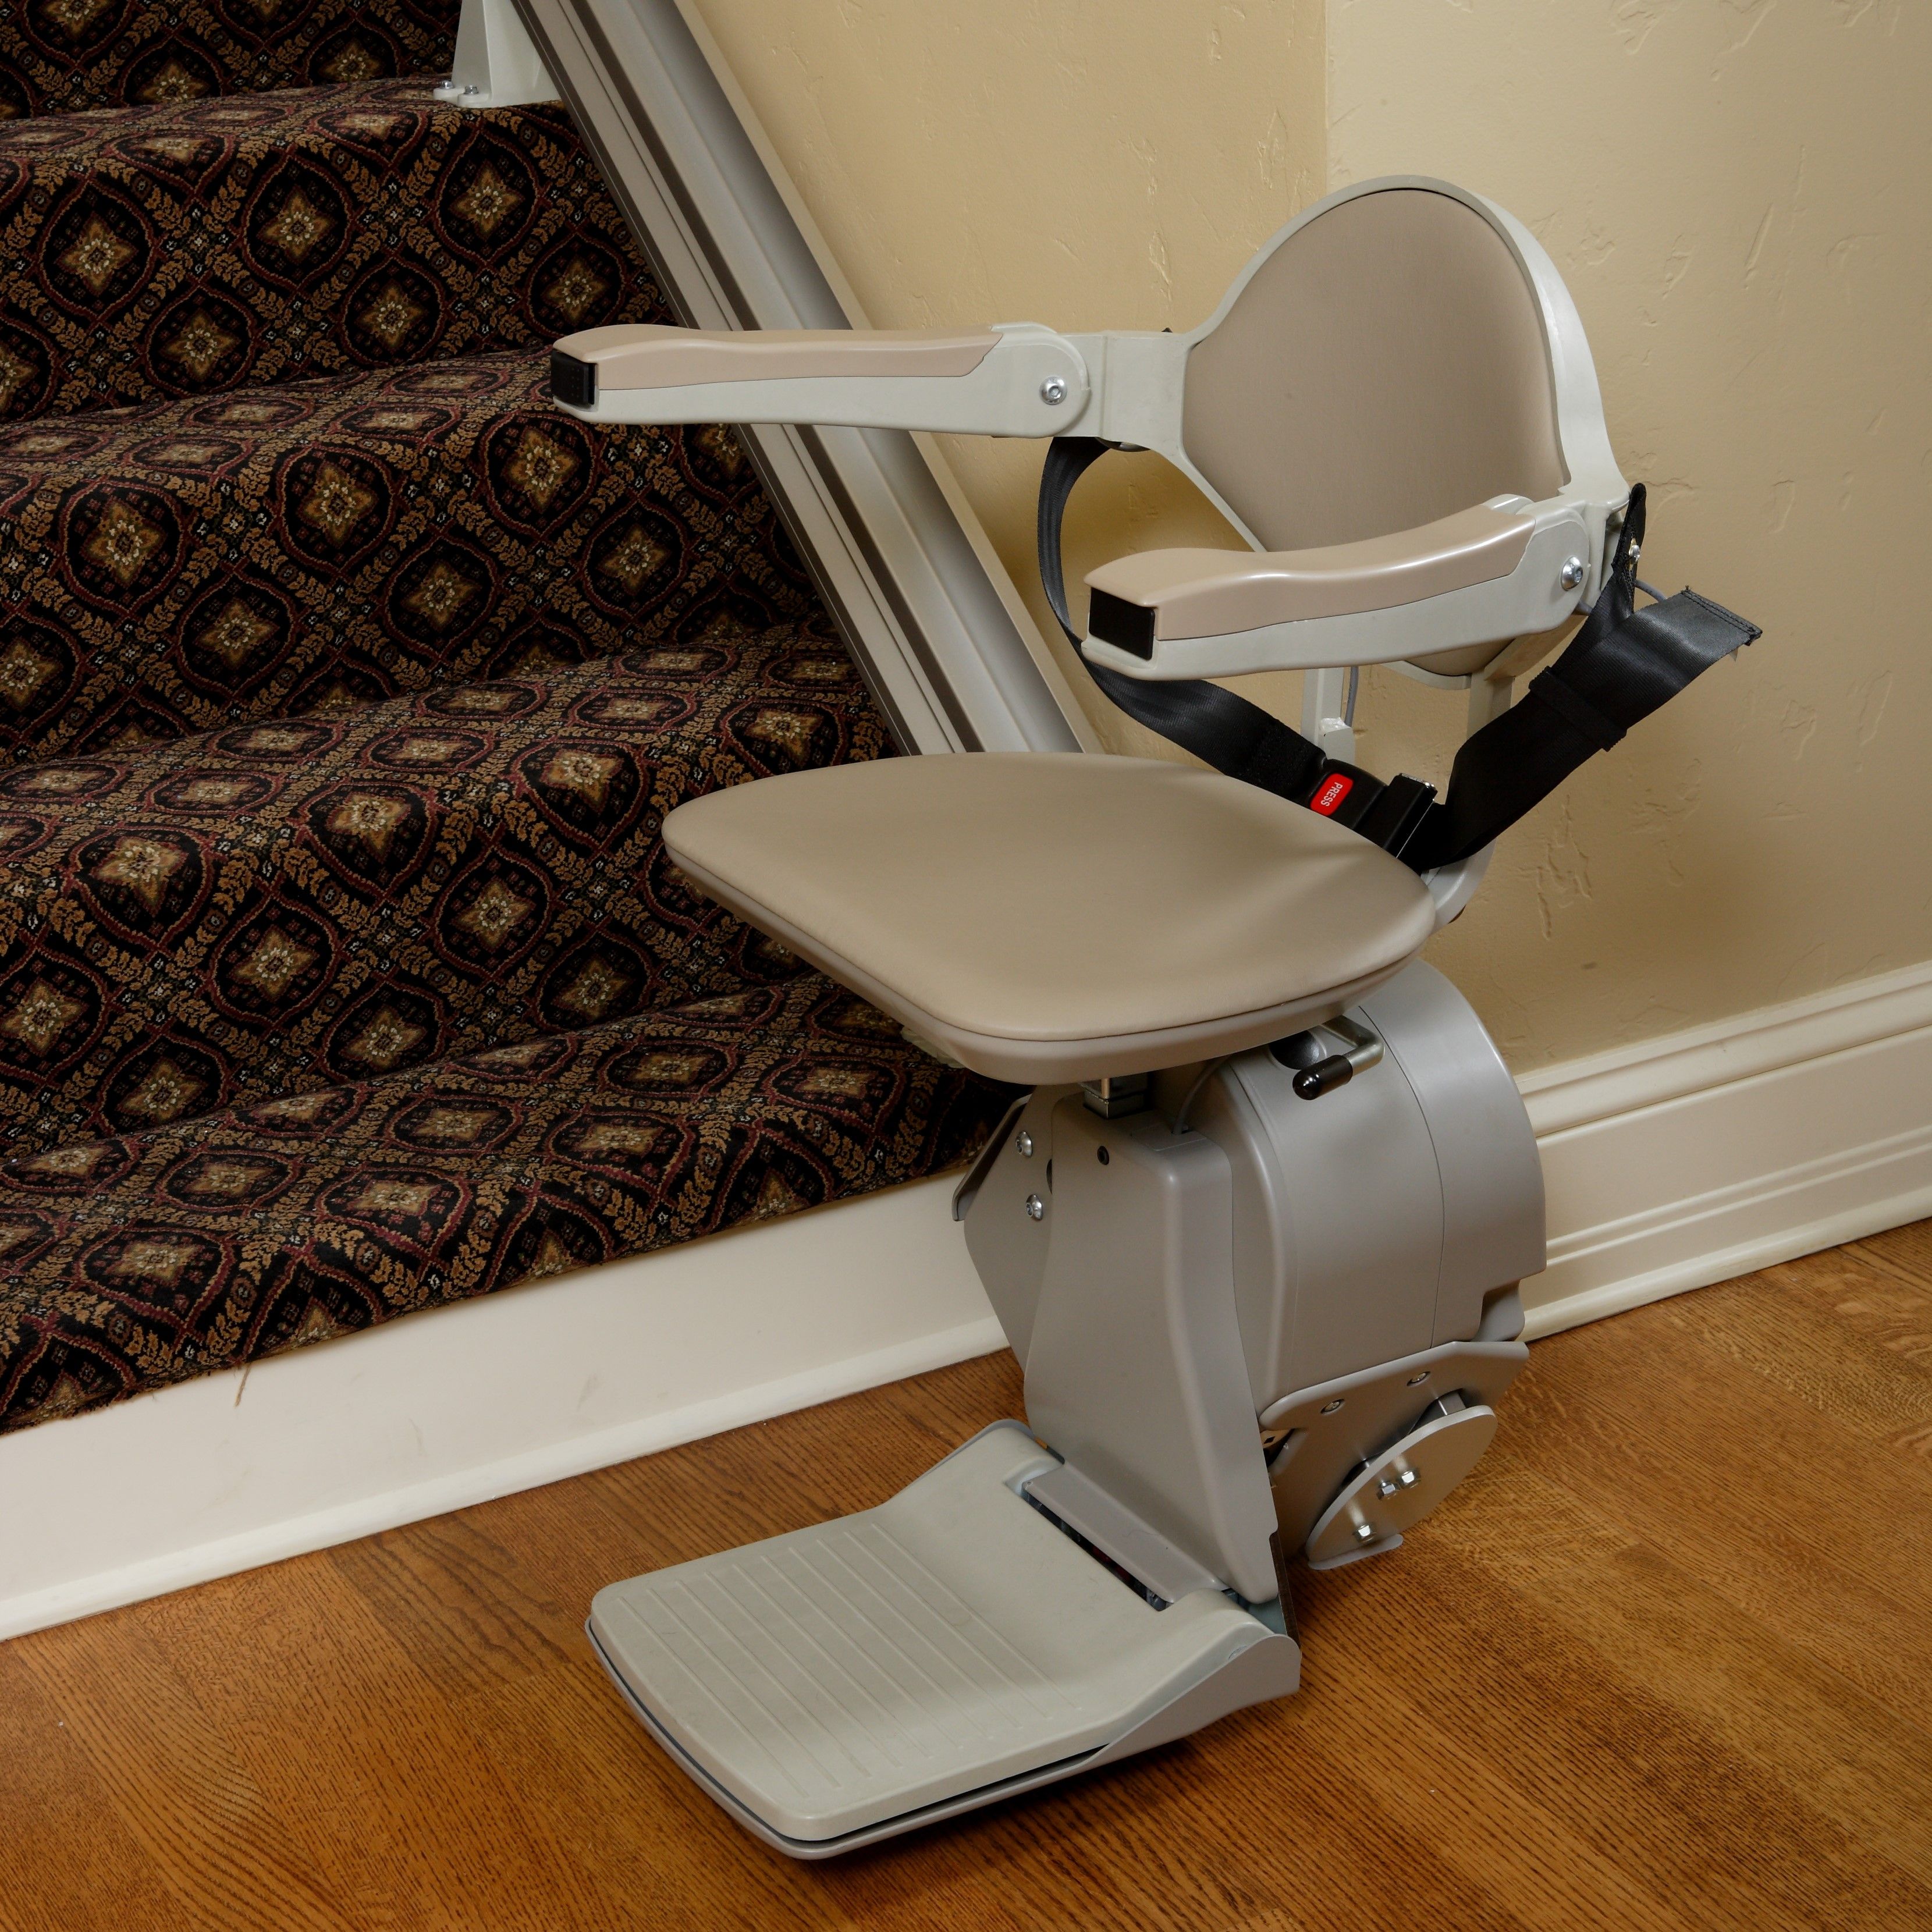 stairlift sacramento ca indoor home residential straight rail chairlift for elderly